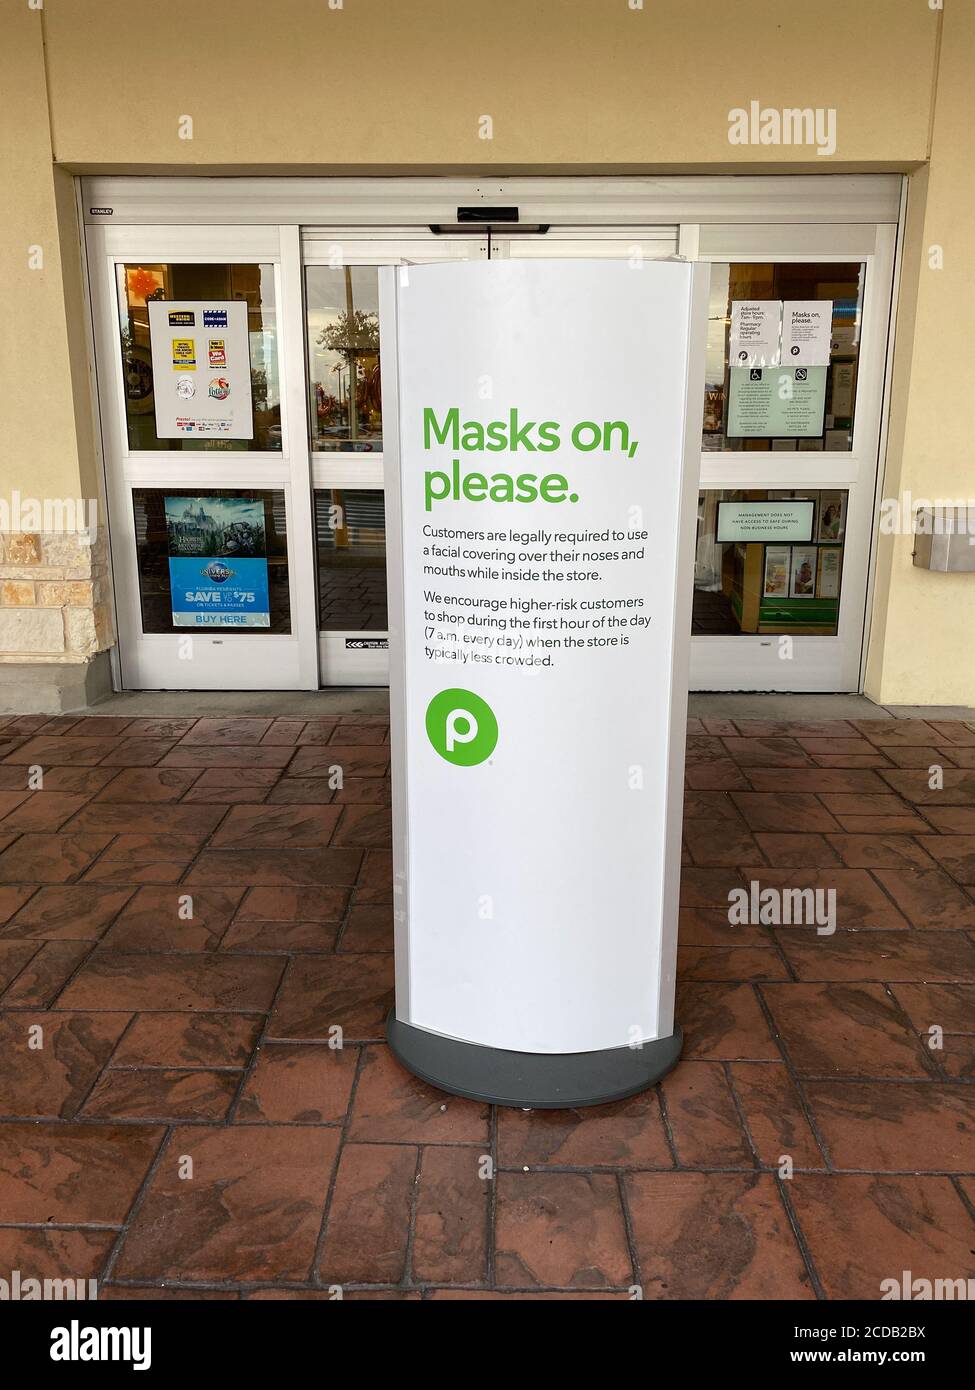 Orlando, FL/USA- 7/23/20: Ein Gesichtsmasken erforderliches Schild an einem Publix Lebensmittelgeschäft in Lake Nona in Orlando, Florida. Stockfoto